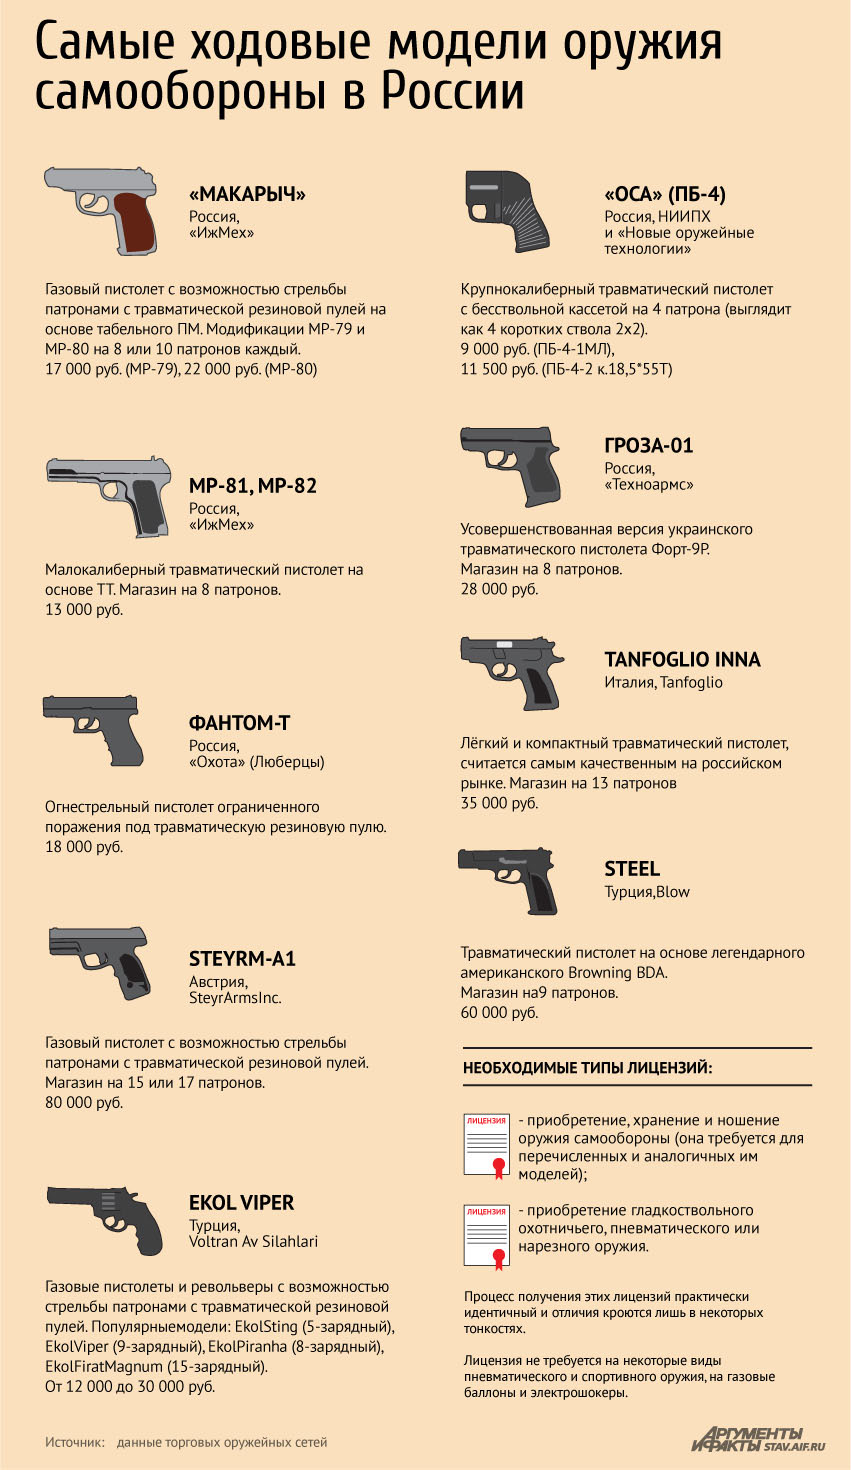 Сколько единиц оружия можно. Разрешение на приобретение травматического пистолета. Разрешенное травматическое оружие с лицензией. Виды оружия. Гладкоствольное оружие для самообороны разрешение на оружие.